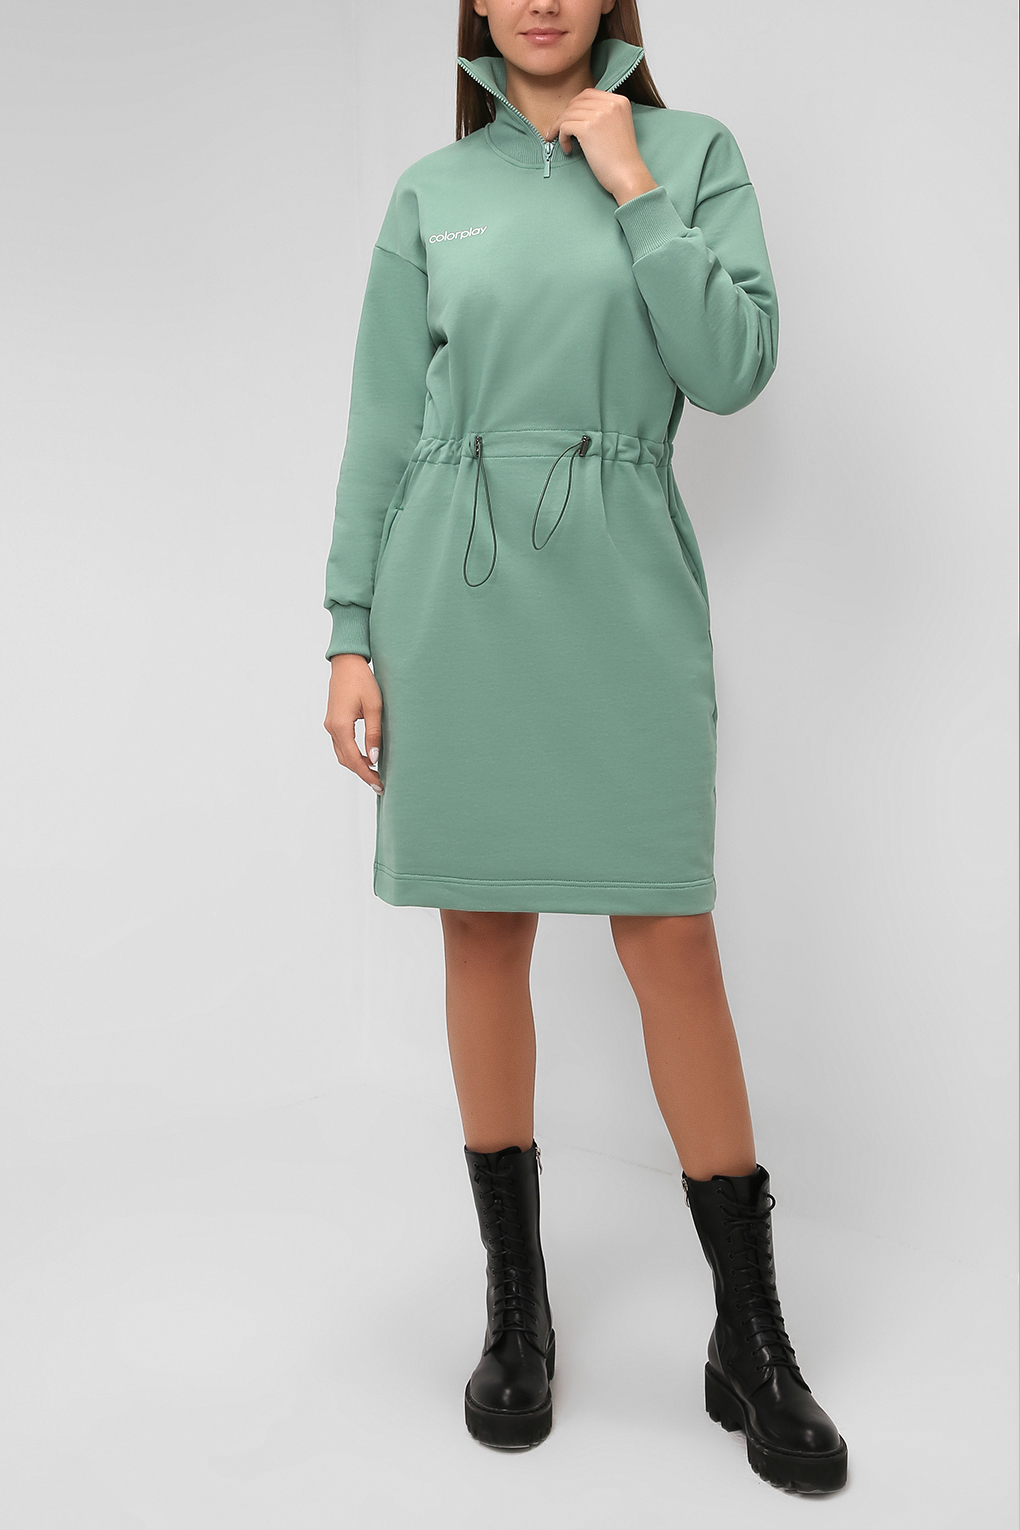 Платье женское COLORPLAY CP21085215 зеленое XL